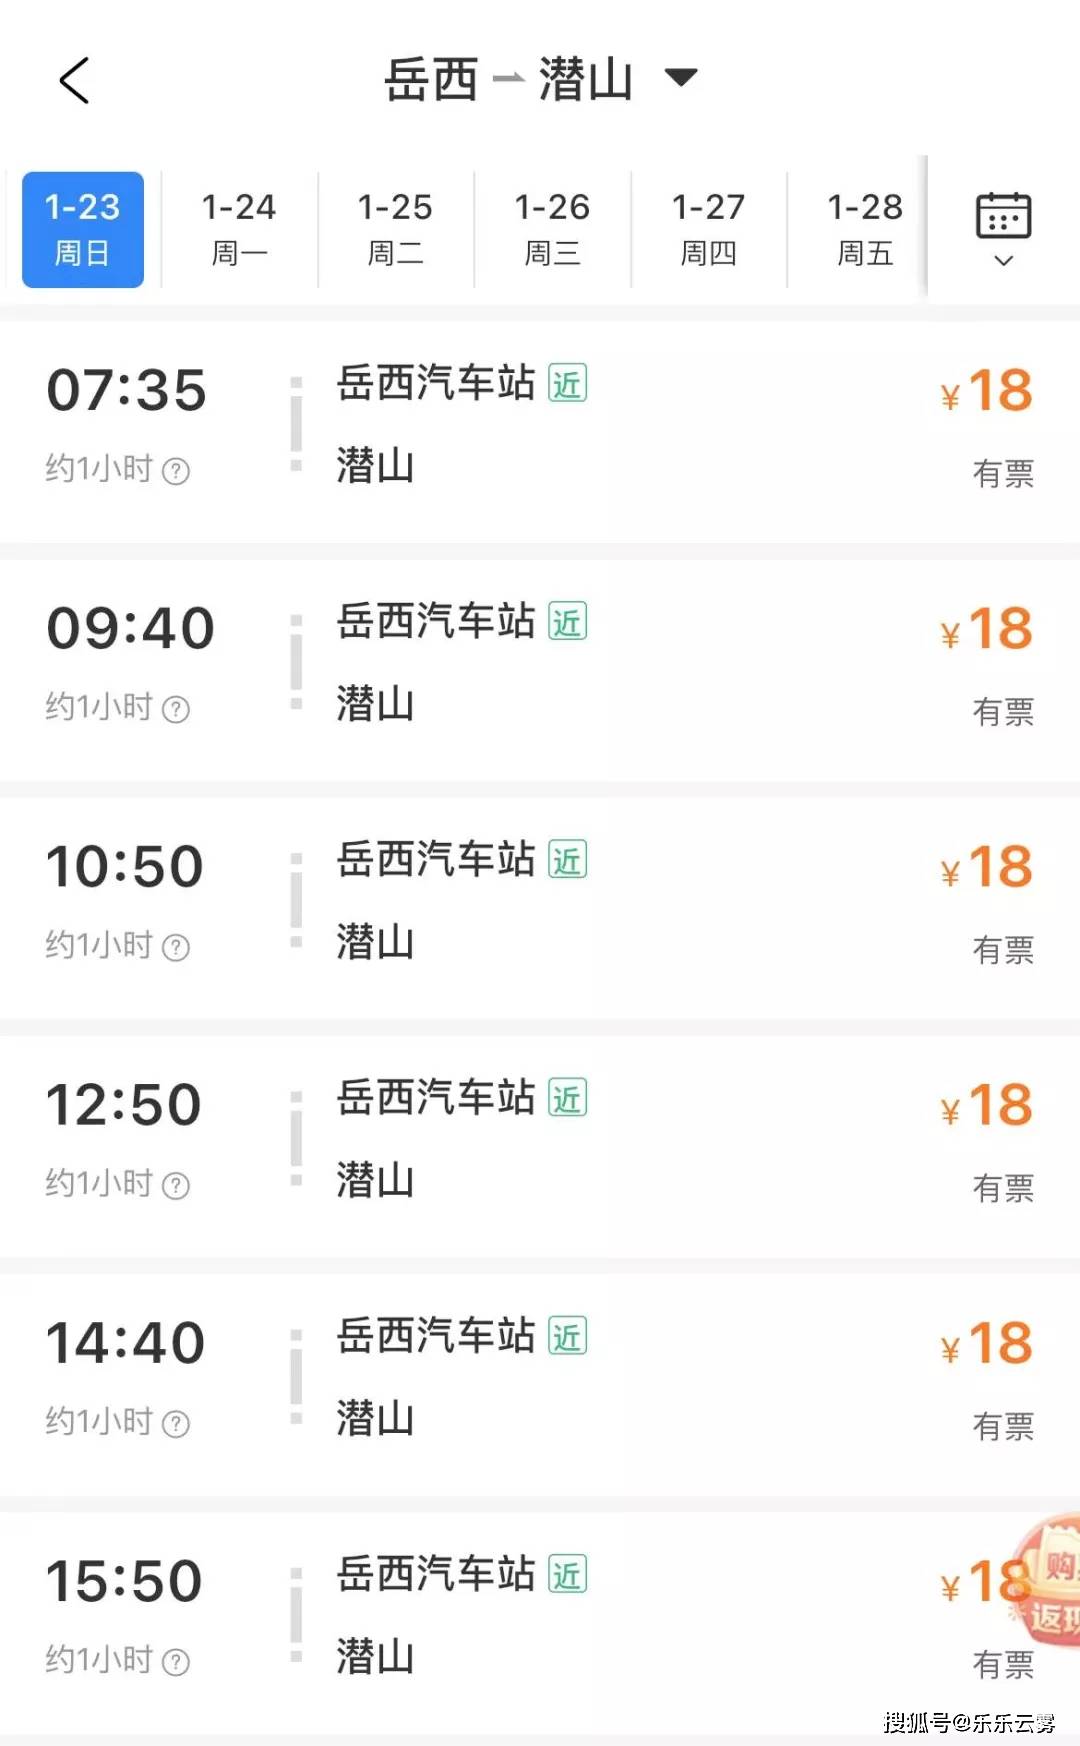 北京11条地铁进2分钟 2条线路适时调图_中国国情_中国网